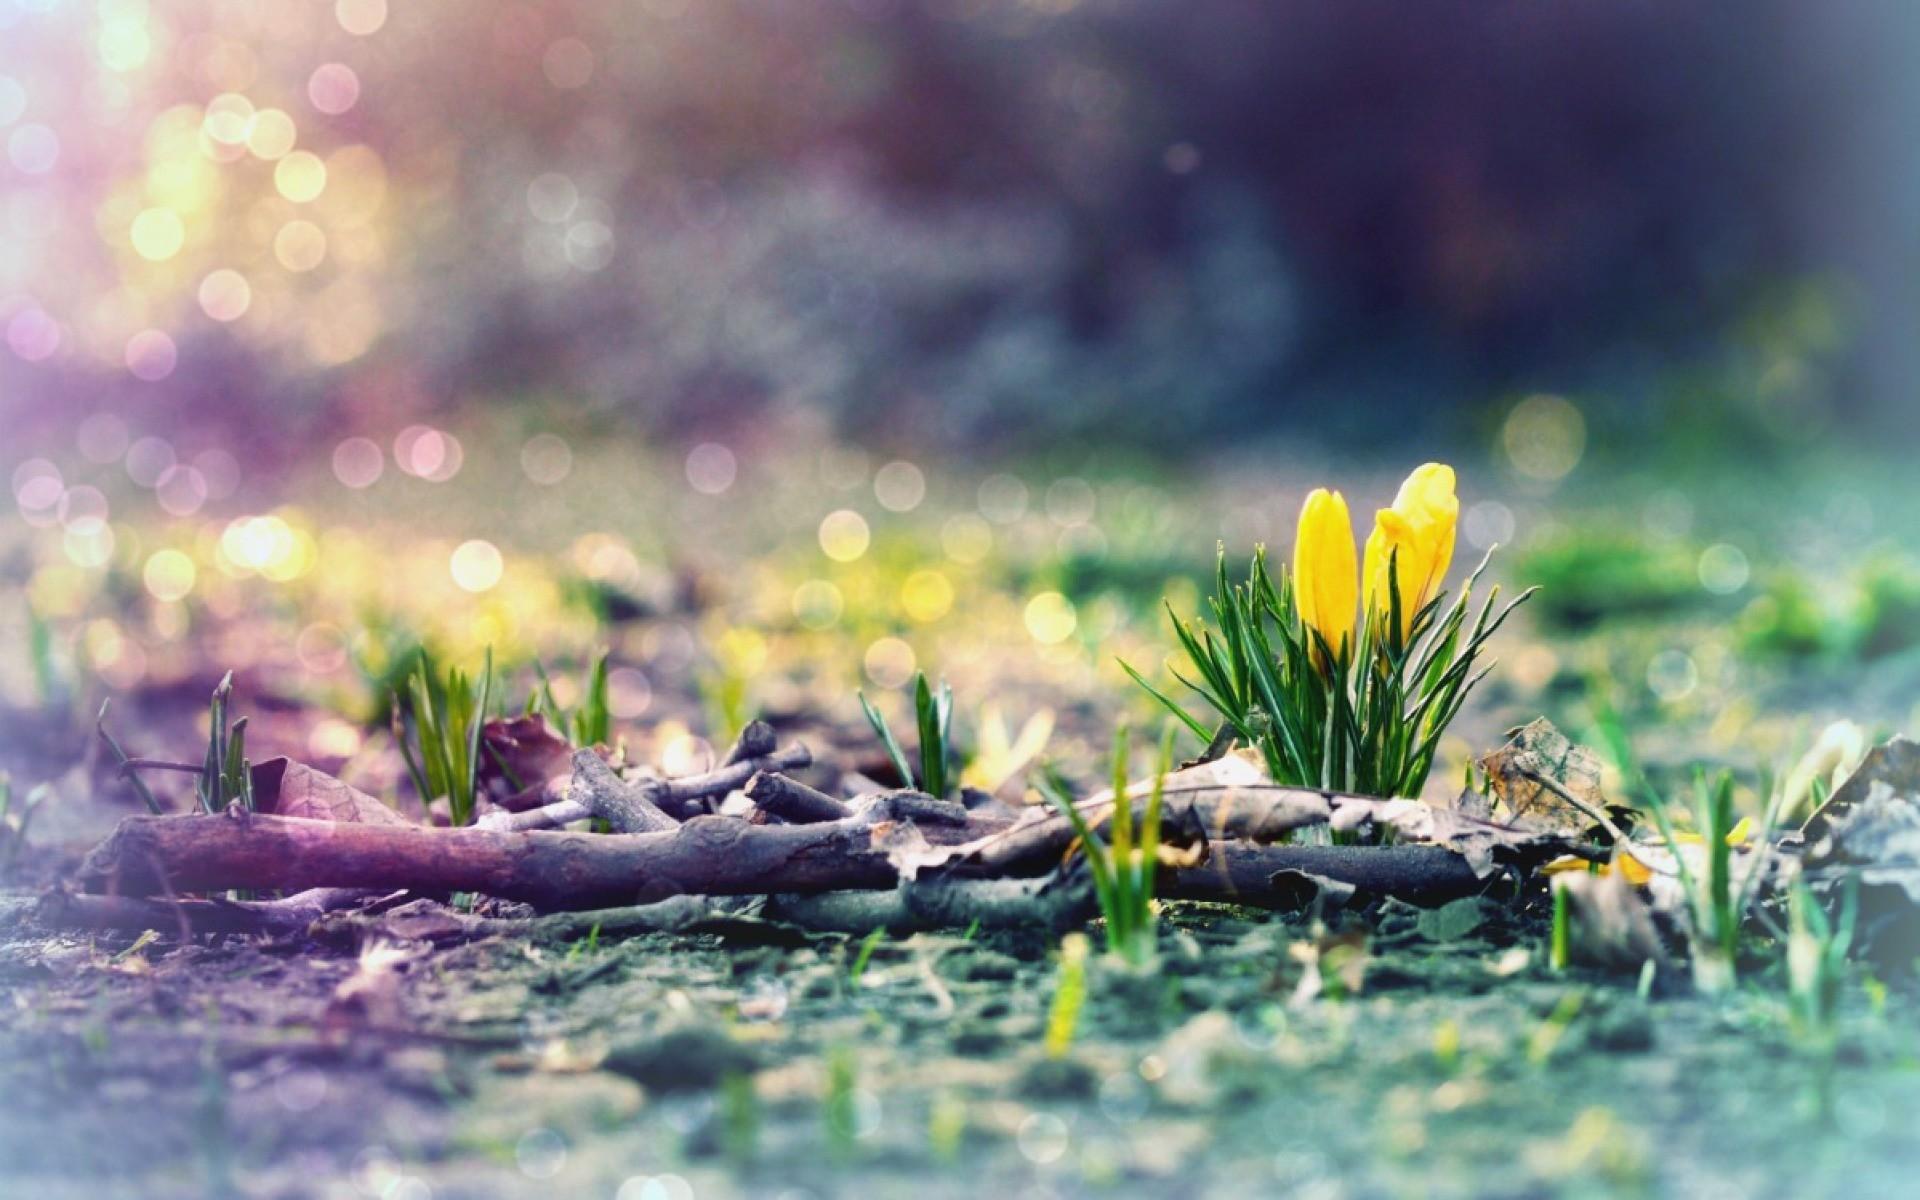 Hình nền mùa xuân sớm đem đến cho bạn sự tươi mới và đầy kỳ vọng trong công việc hay cuộc sống. Hãy tận hưởng không gian làm việc đầy tinh tế và sáng tạo với những hình nền mùa xuân sớm chất lượng HD. Xem hình ảnh liên quan để bắt đầu trải nghiệm một mùa xuân sớm đầy tiềm năng.